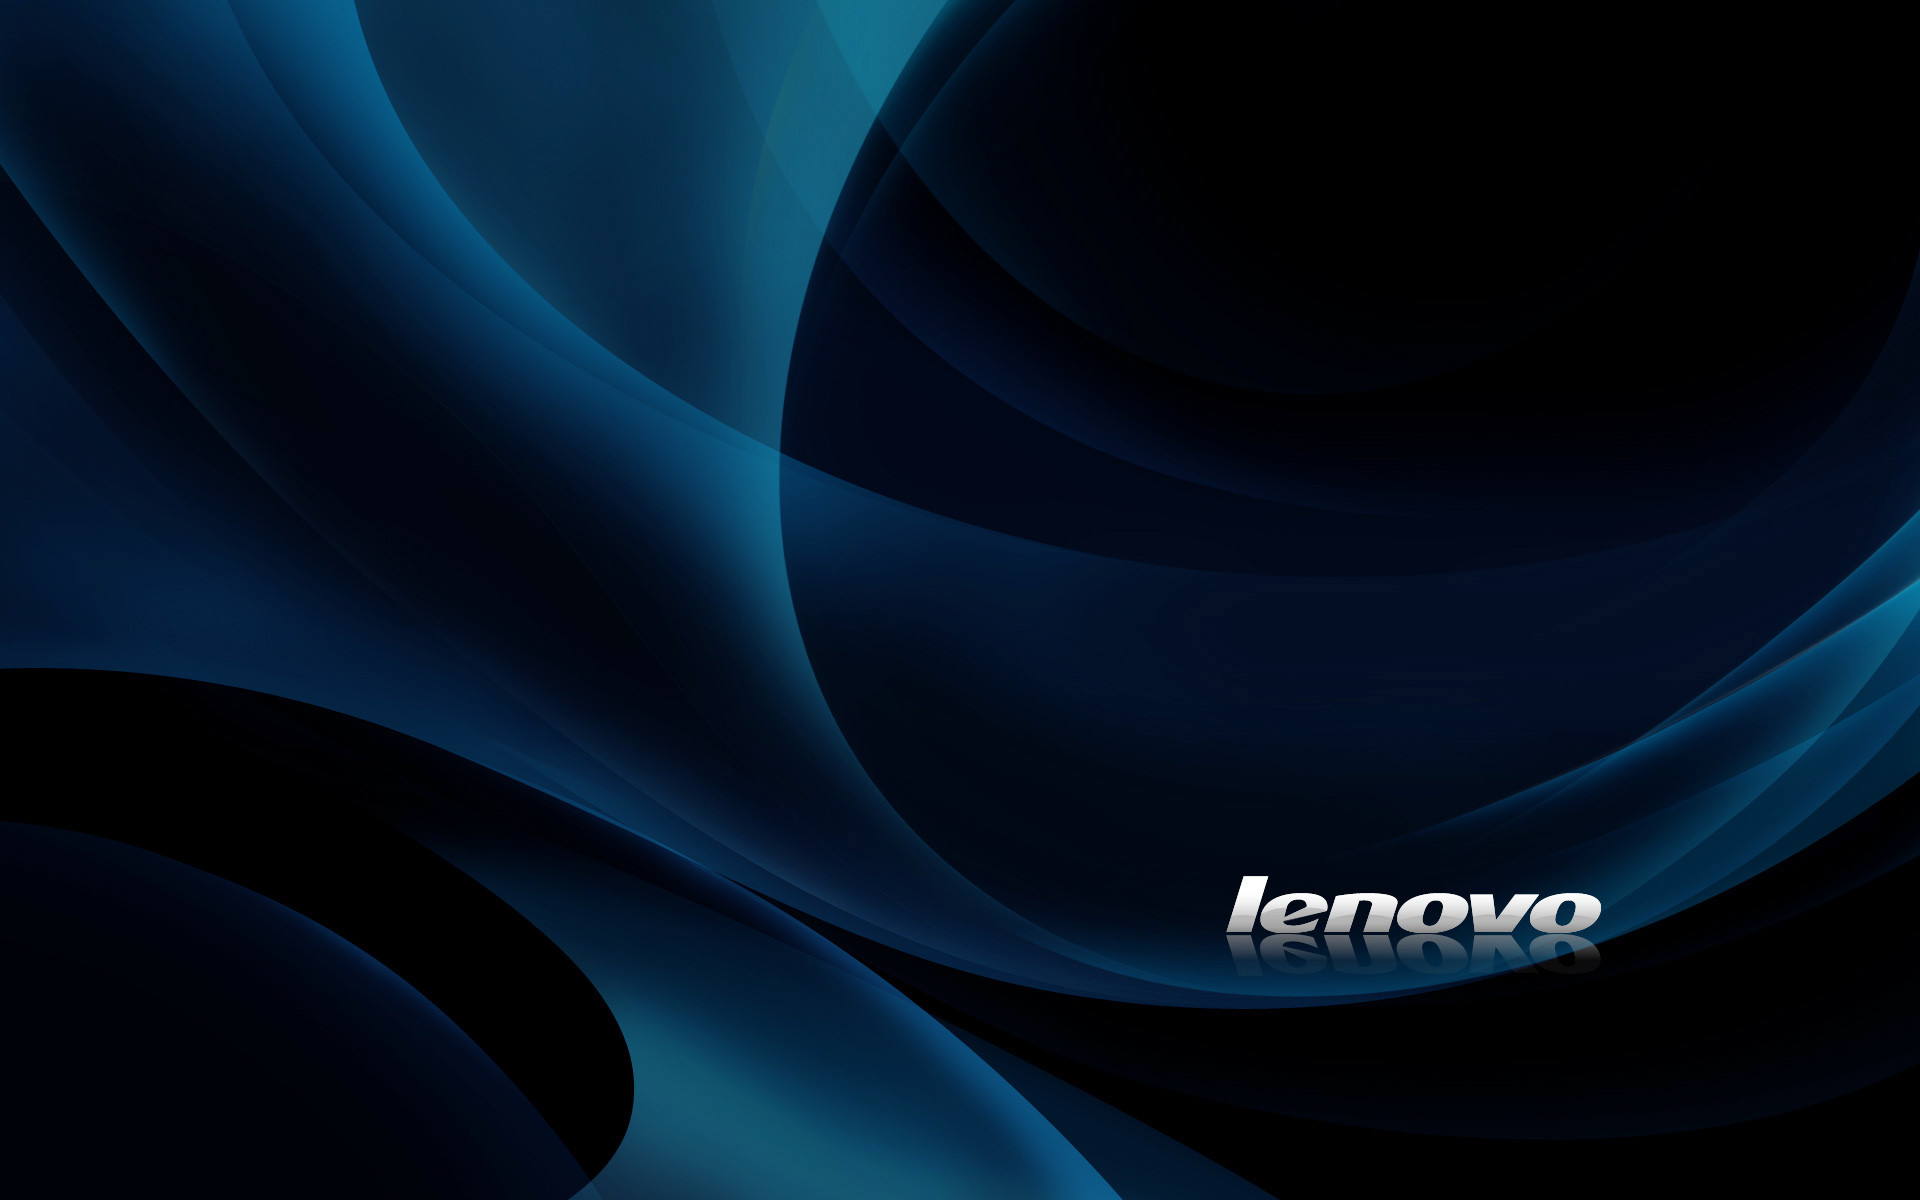 Lenovo - Lenovo Wallpaper Windows 8 , HD Wallpaper & Backgrounds